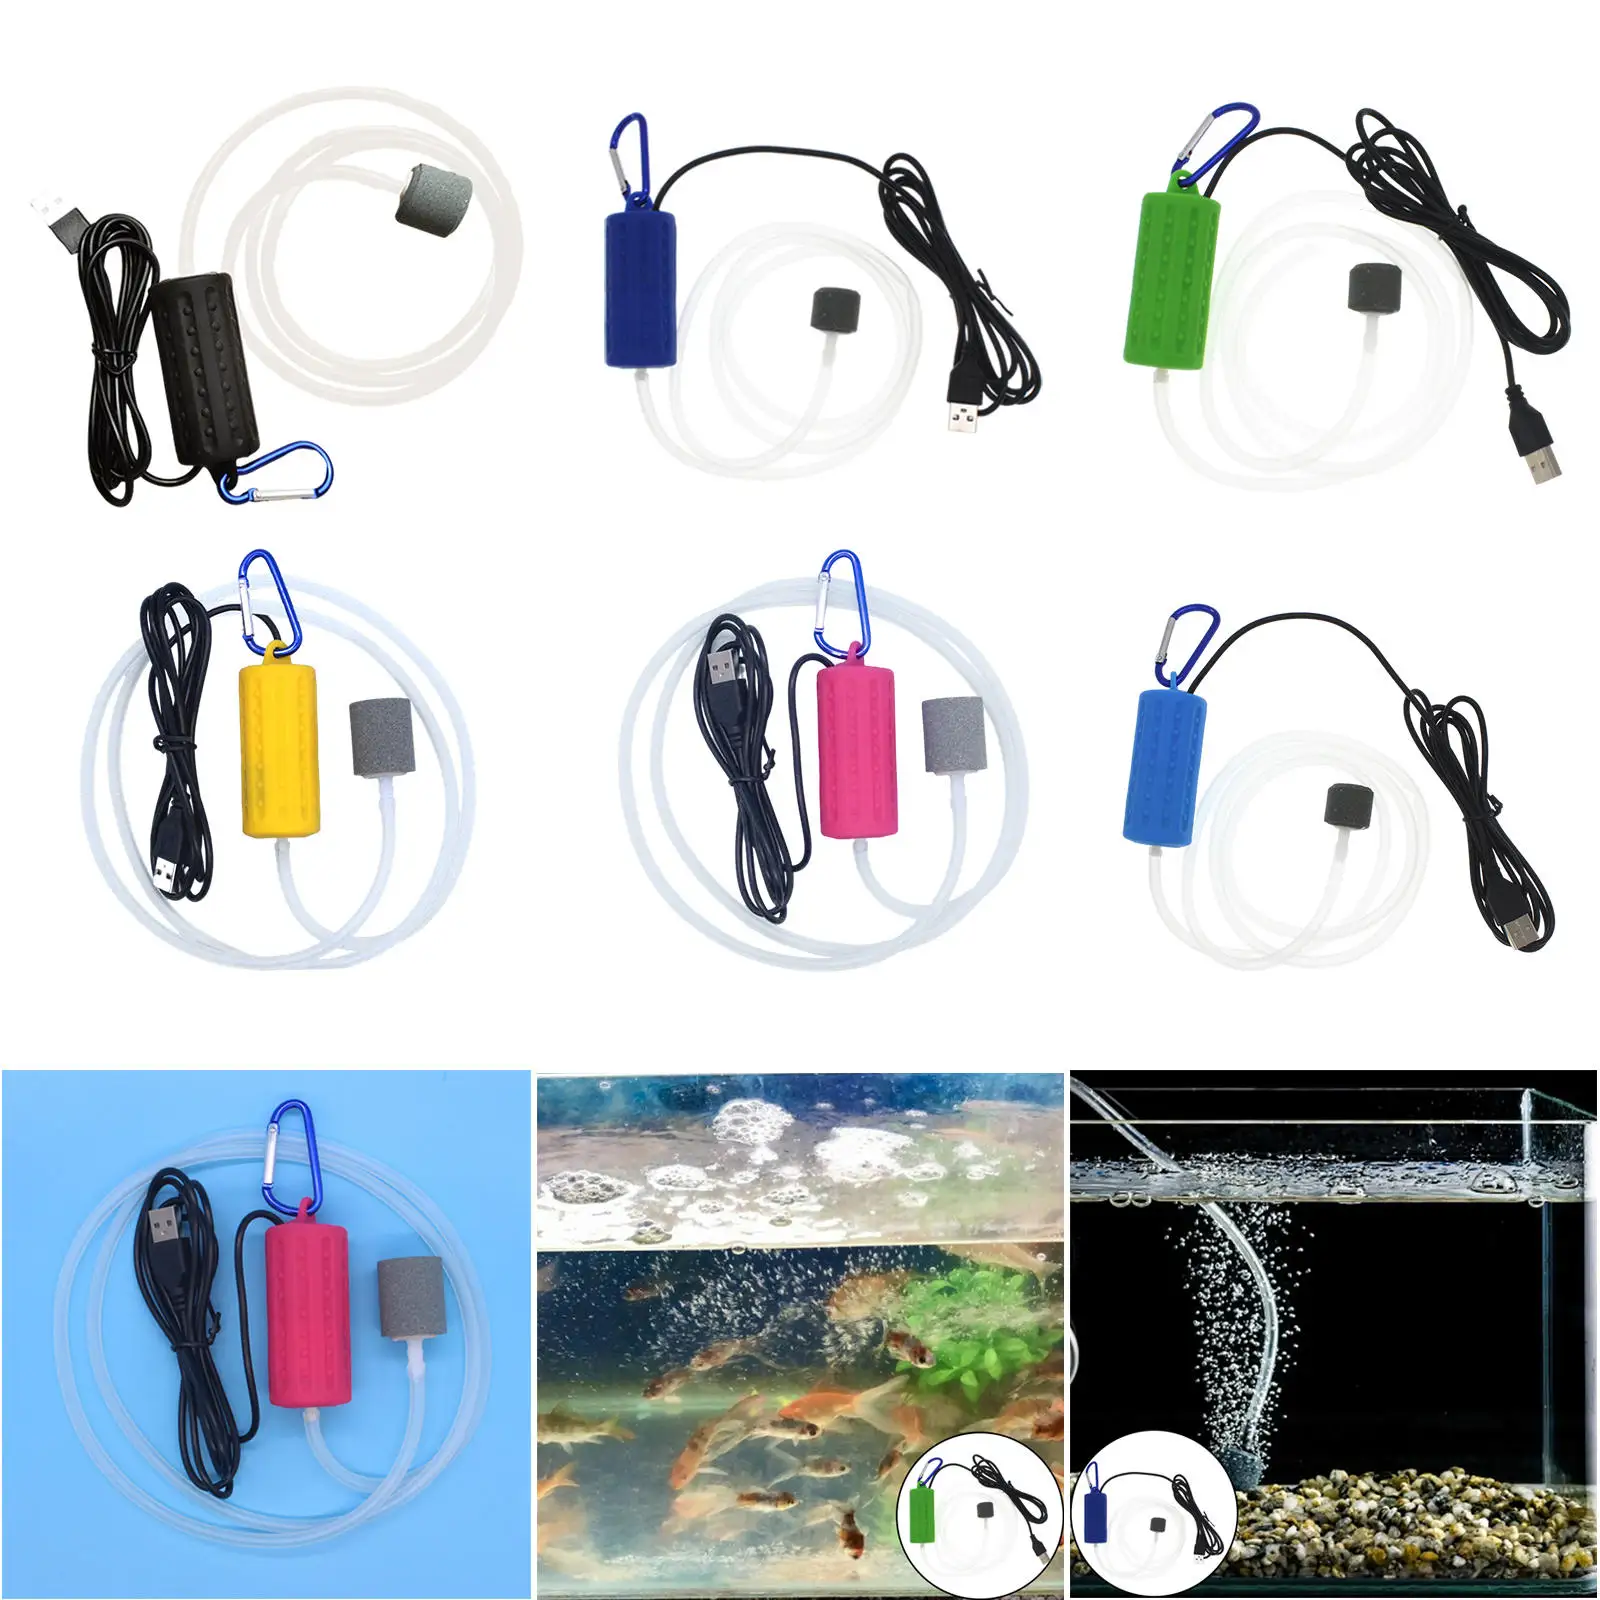 Aquarium Oxygen Air Pump Fish Tank USB Silent Air Compressor Aerator Portable Mini Small Oxygenator Aquarium Accessories 5v